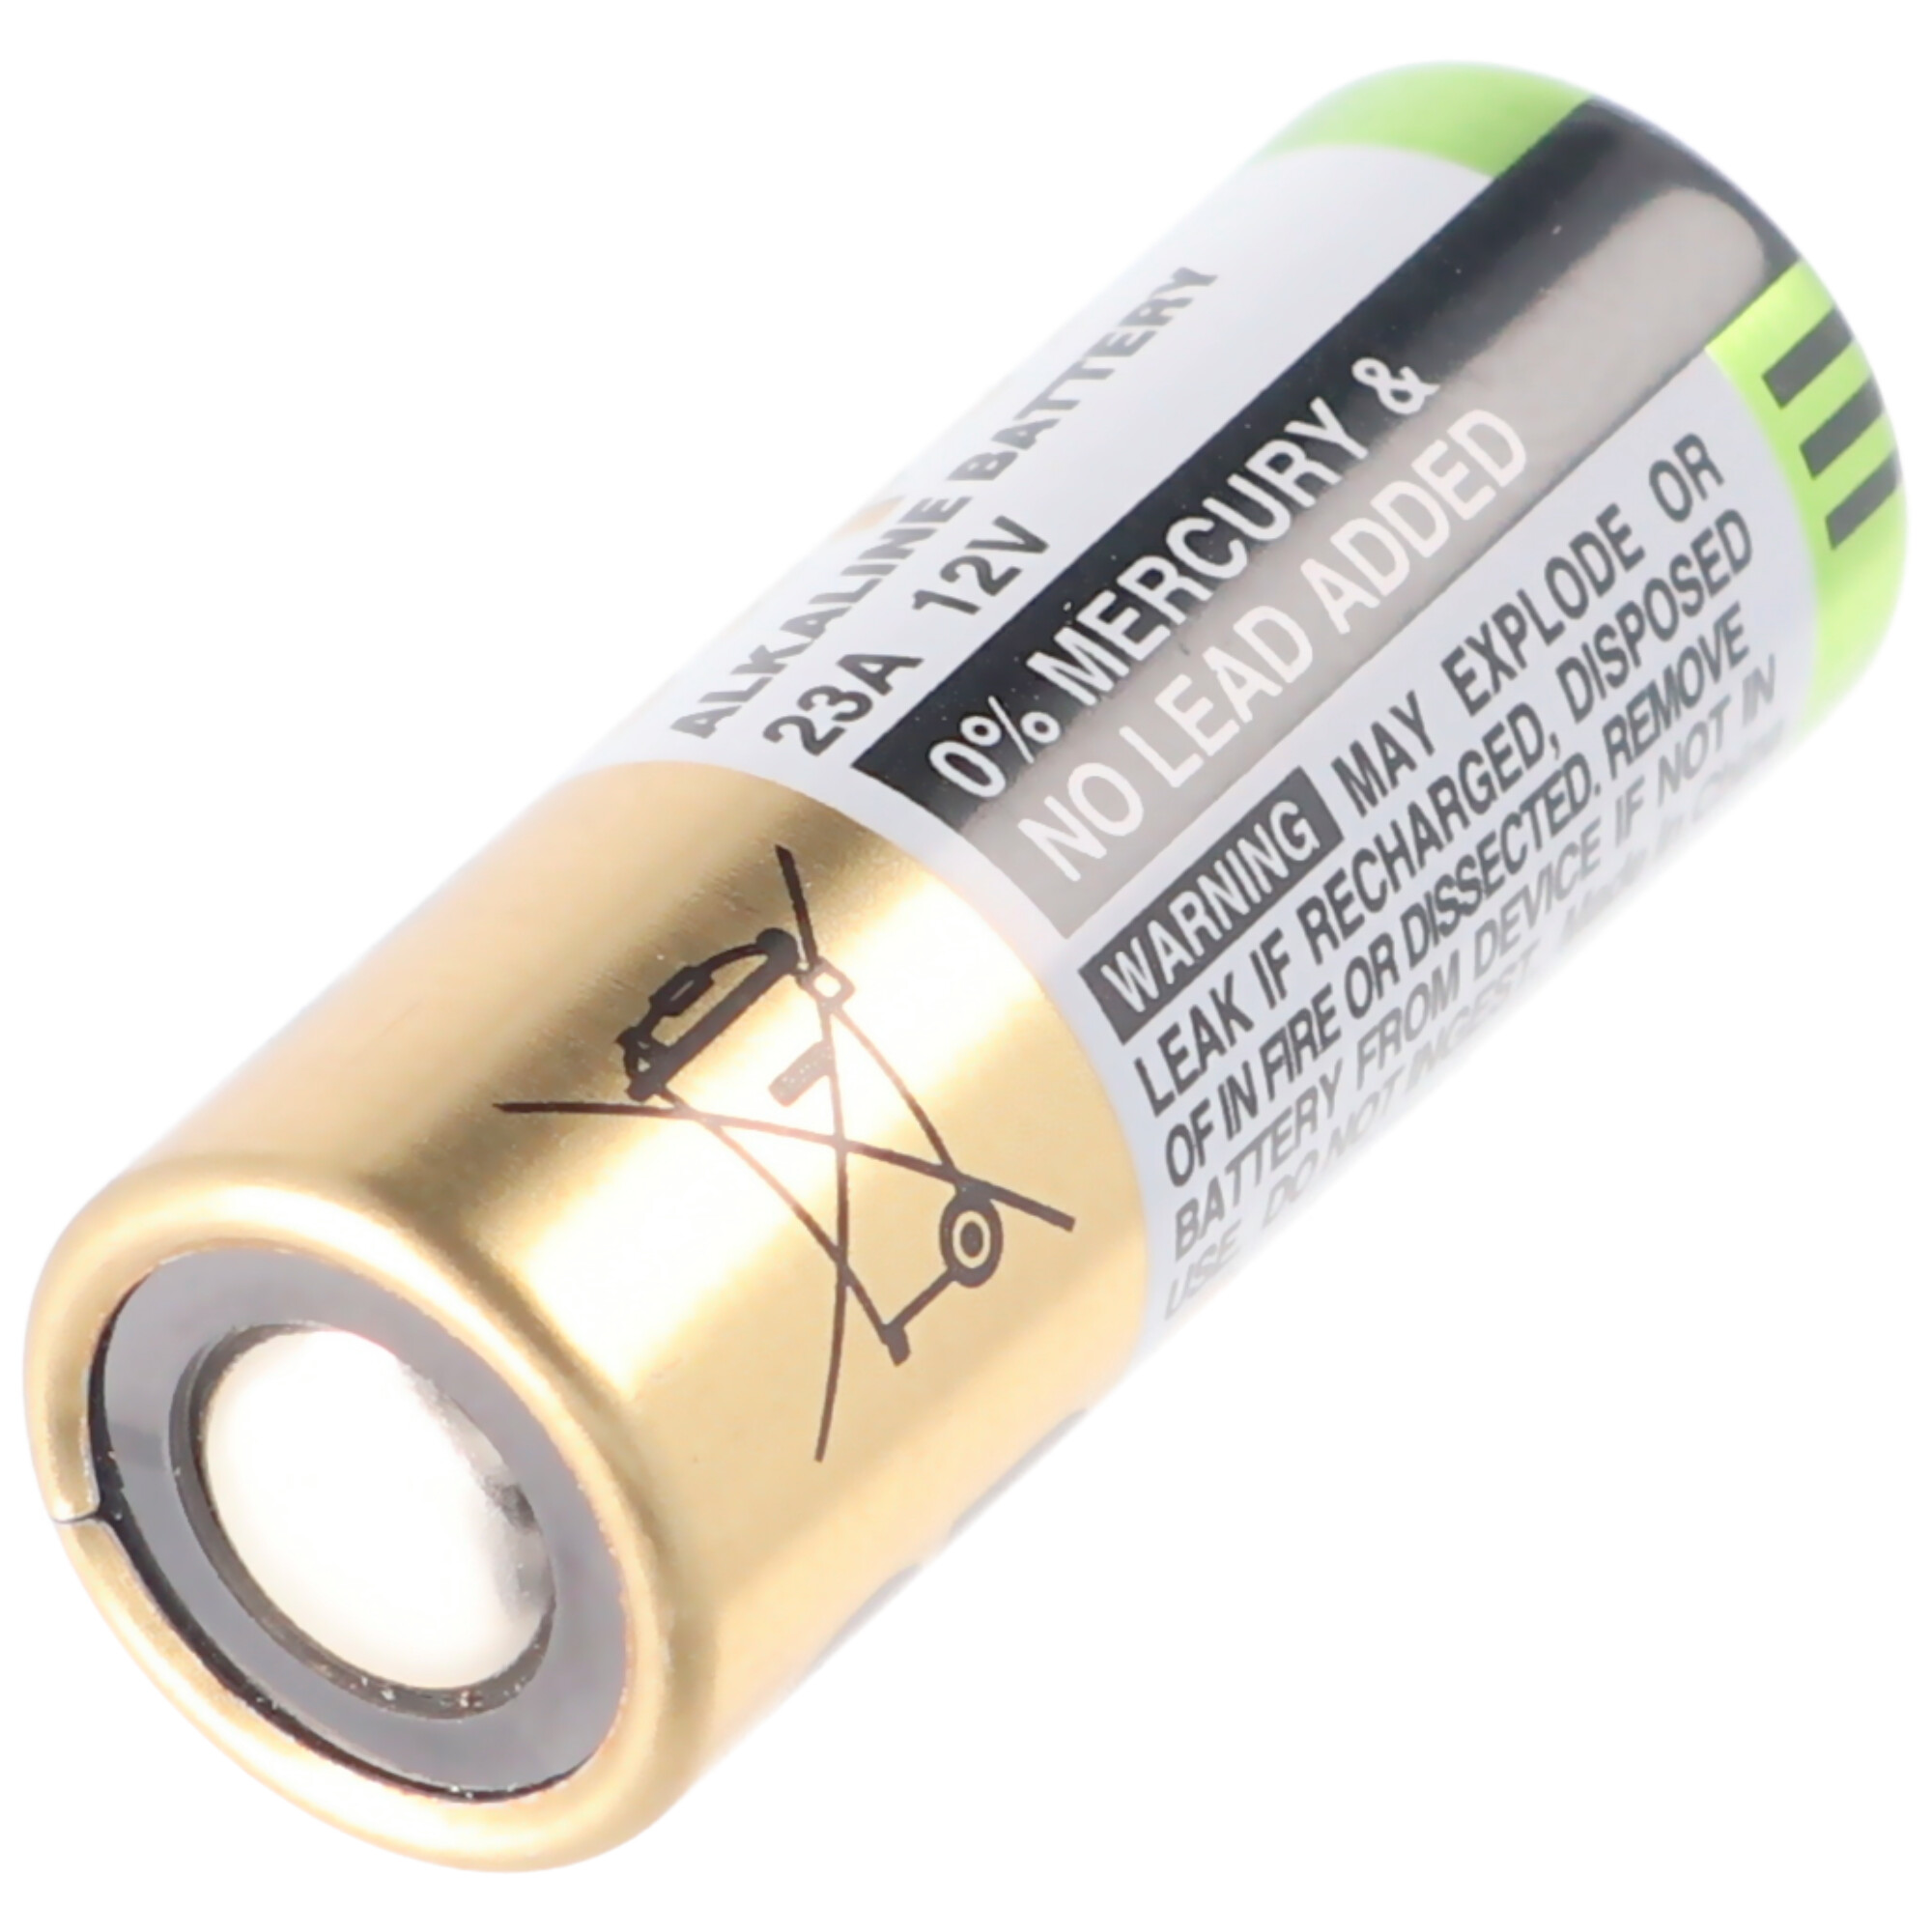 GP23A 12 Volt Super High Voltage Alkaline Batterie 23Ae, A23, VA23GA, MS21,  MN21, 8LR932 kaufen